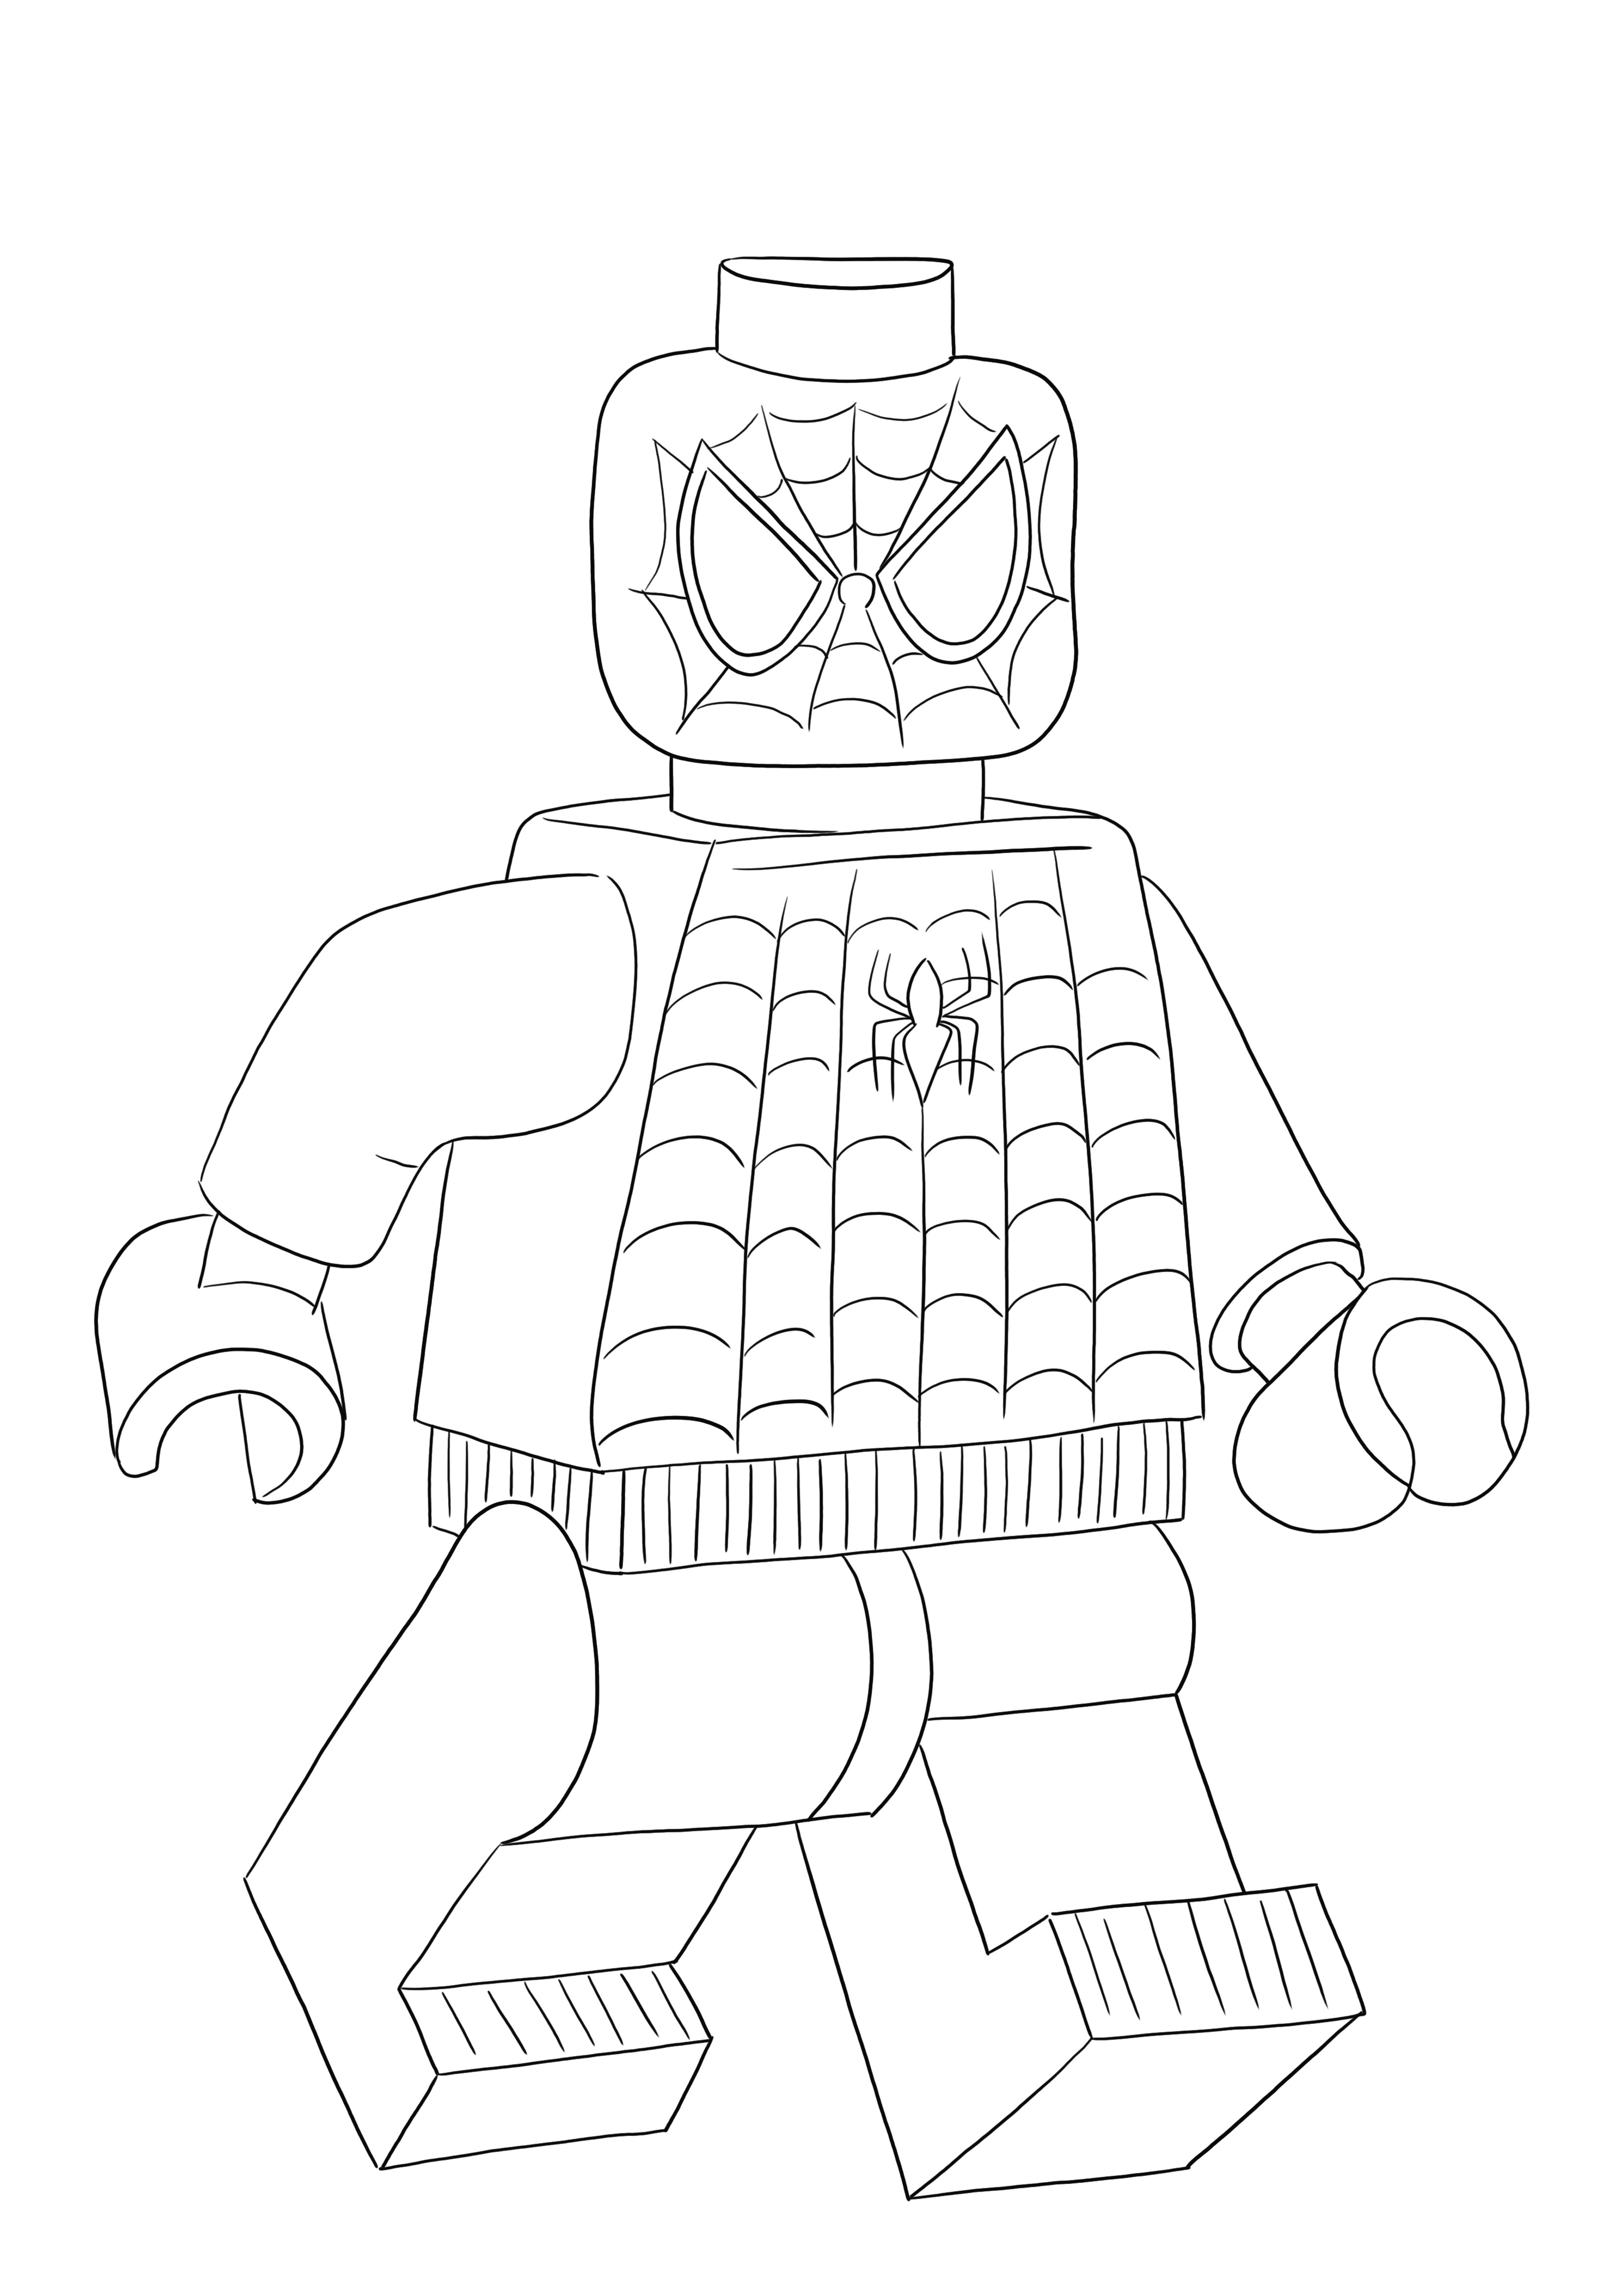 Lego Spiderman -ilmaiskappale on valmis väritettäväksi ja pitämään hauskaa kaikille Legon ystäville